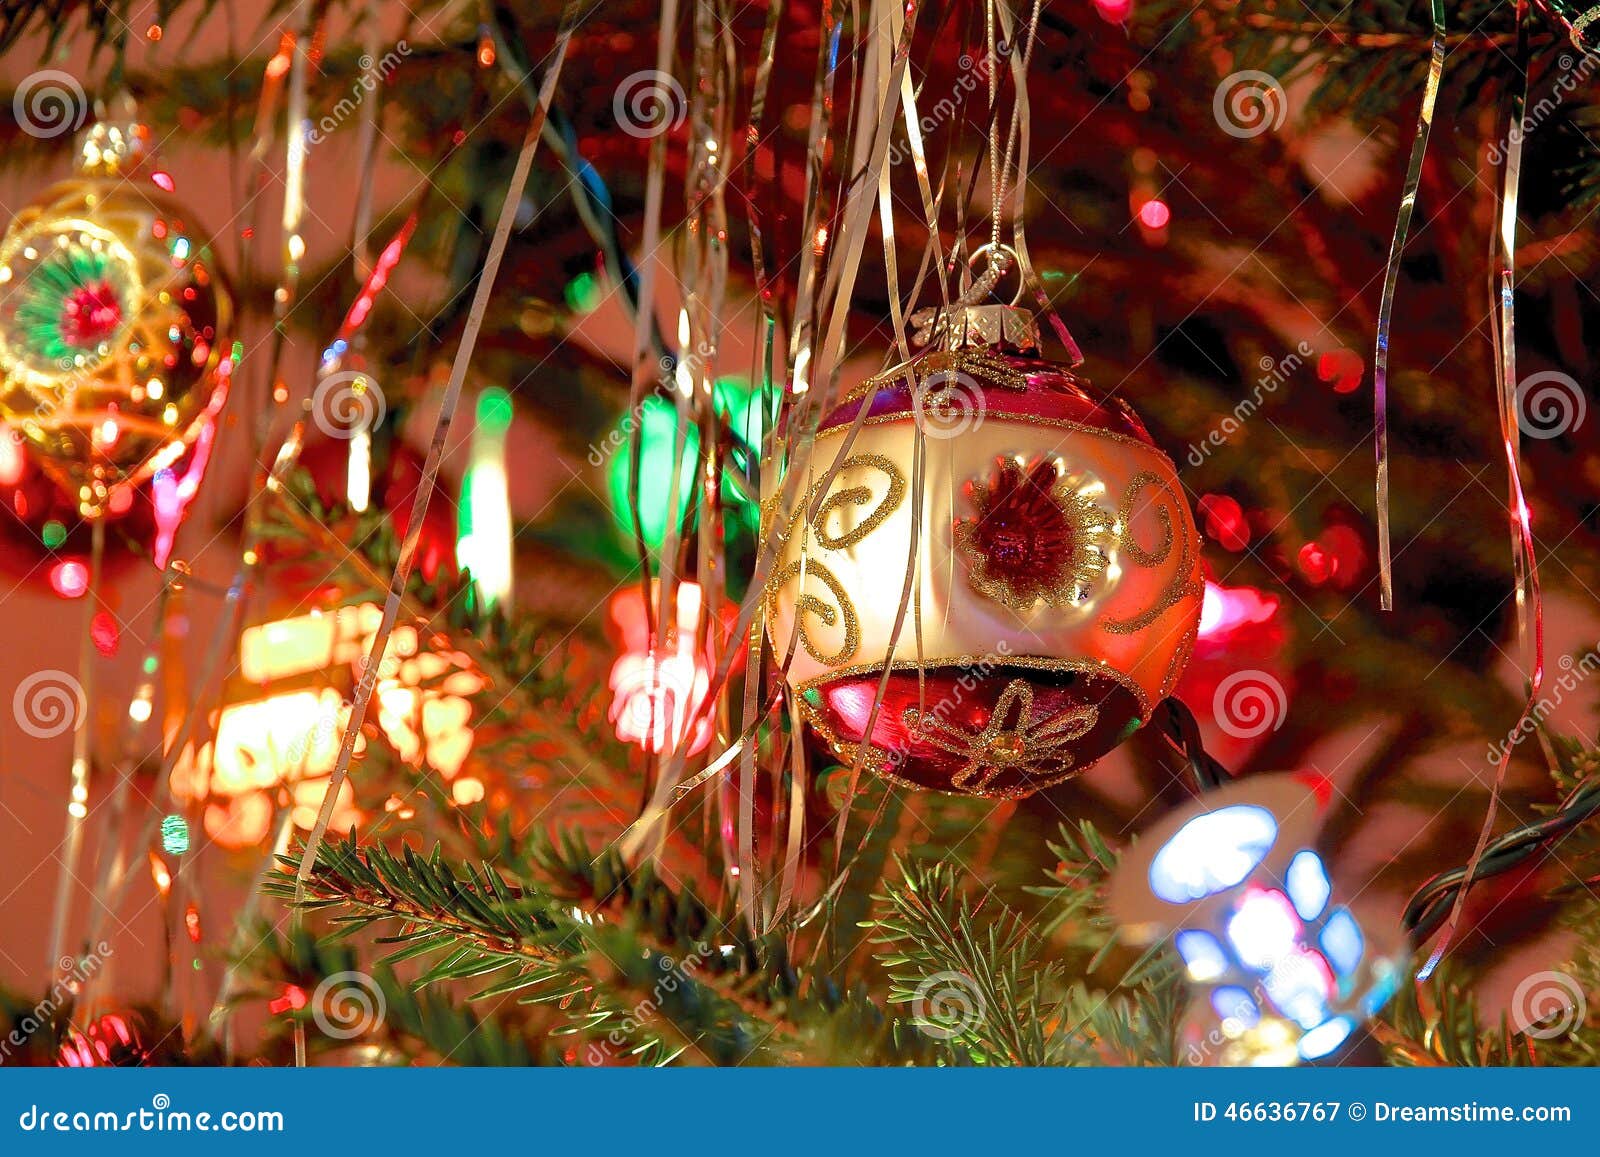 Decorazioni Natalizie Kitsch.Lo Stile Del Kitsch 70s Ha Decorato L Albero Di Natale Immagine Stock Immagine Di Dicembre Felicit 46636767